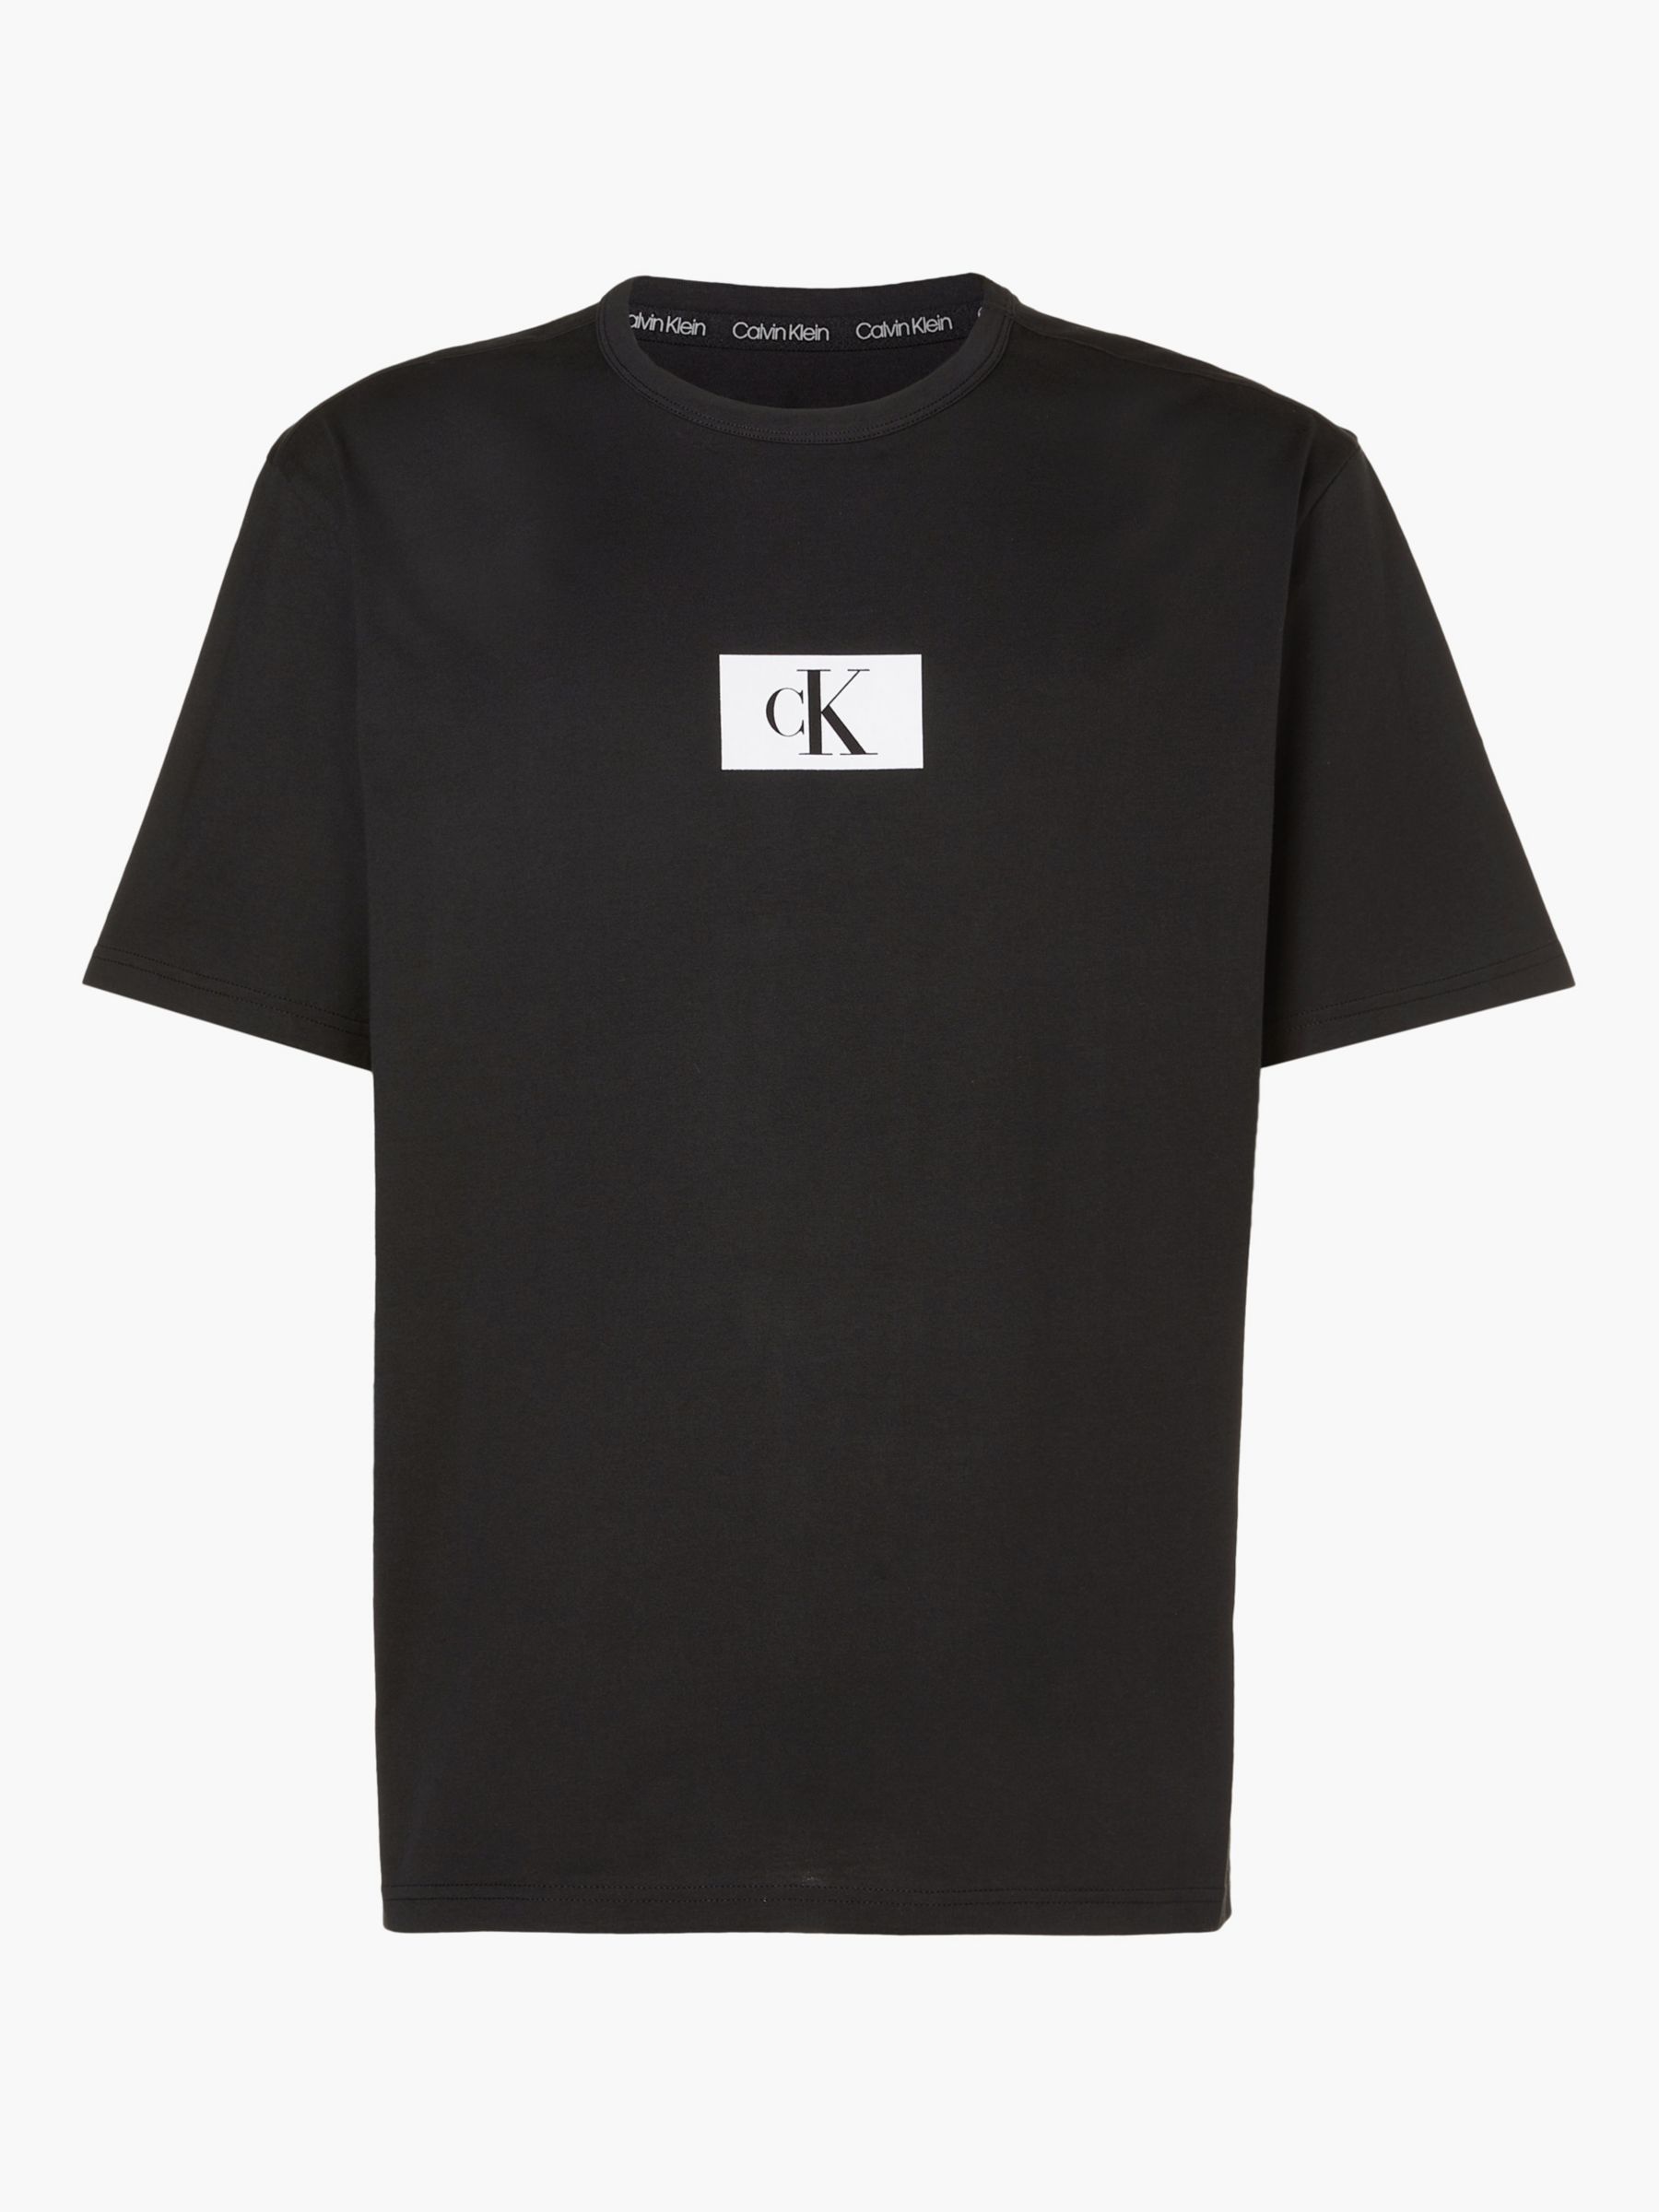 Calvin Klein Block Logo Lounge T-Shirt, Black at John Lewis & Partners